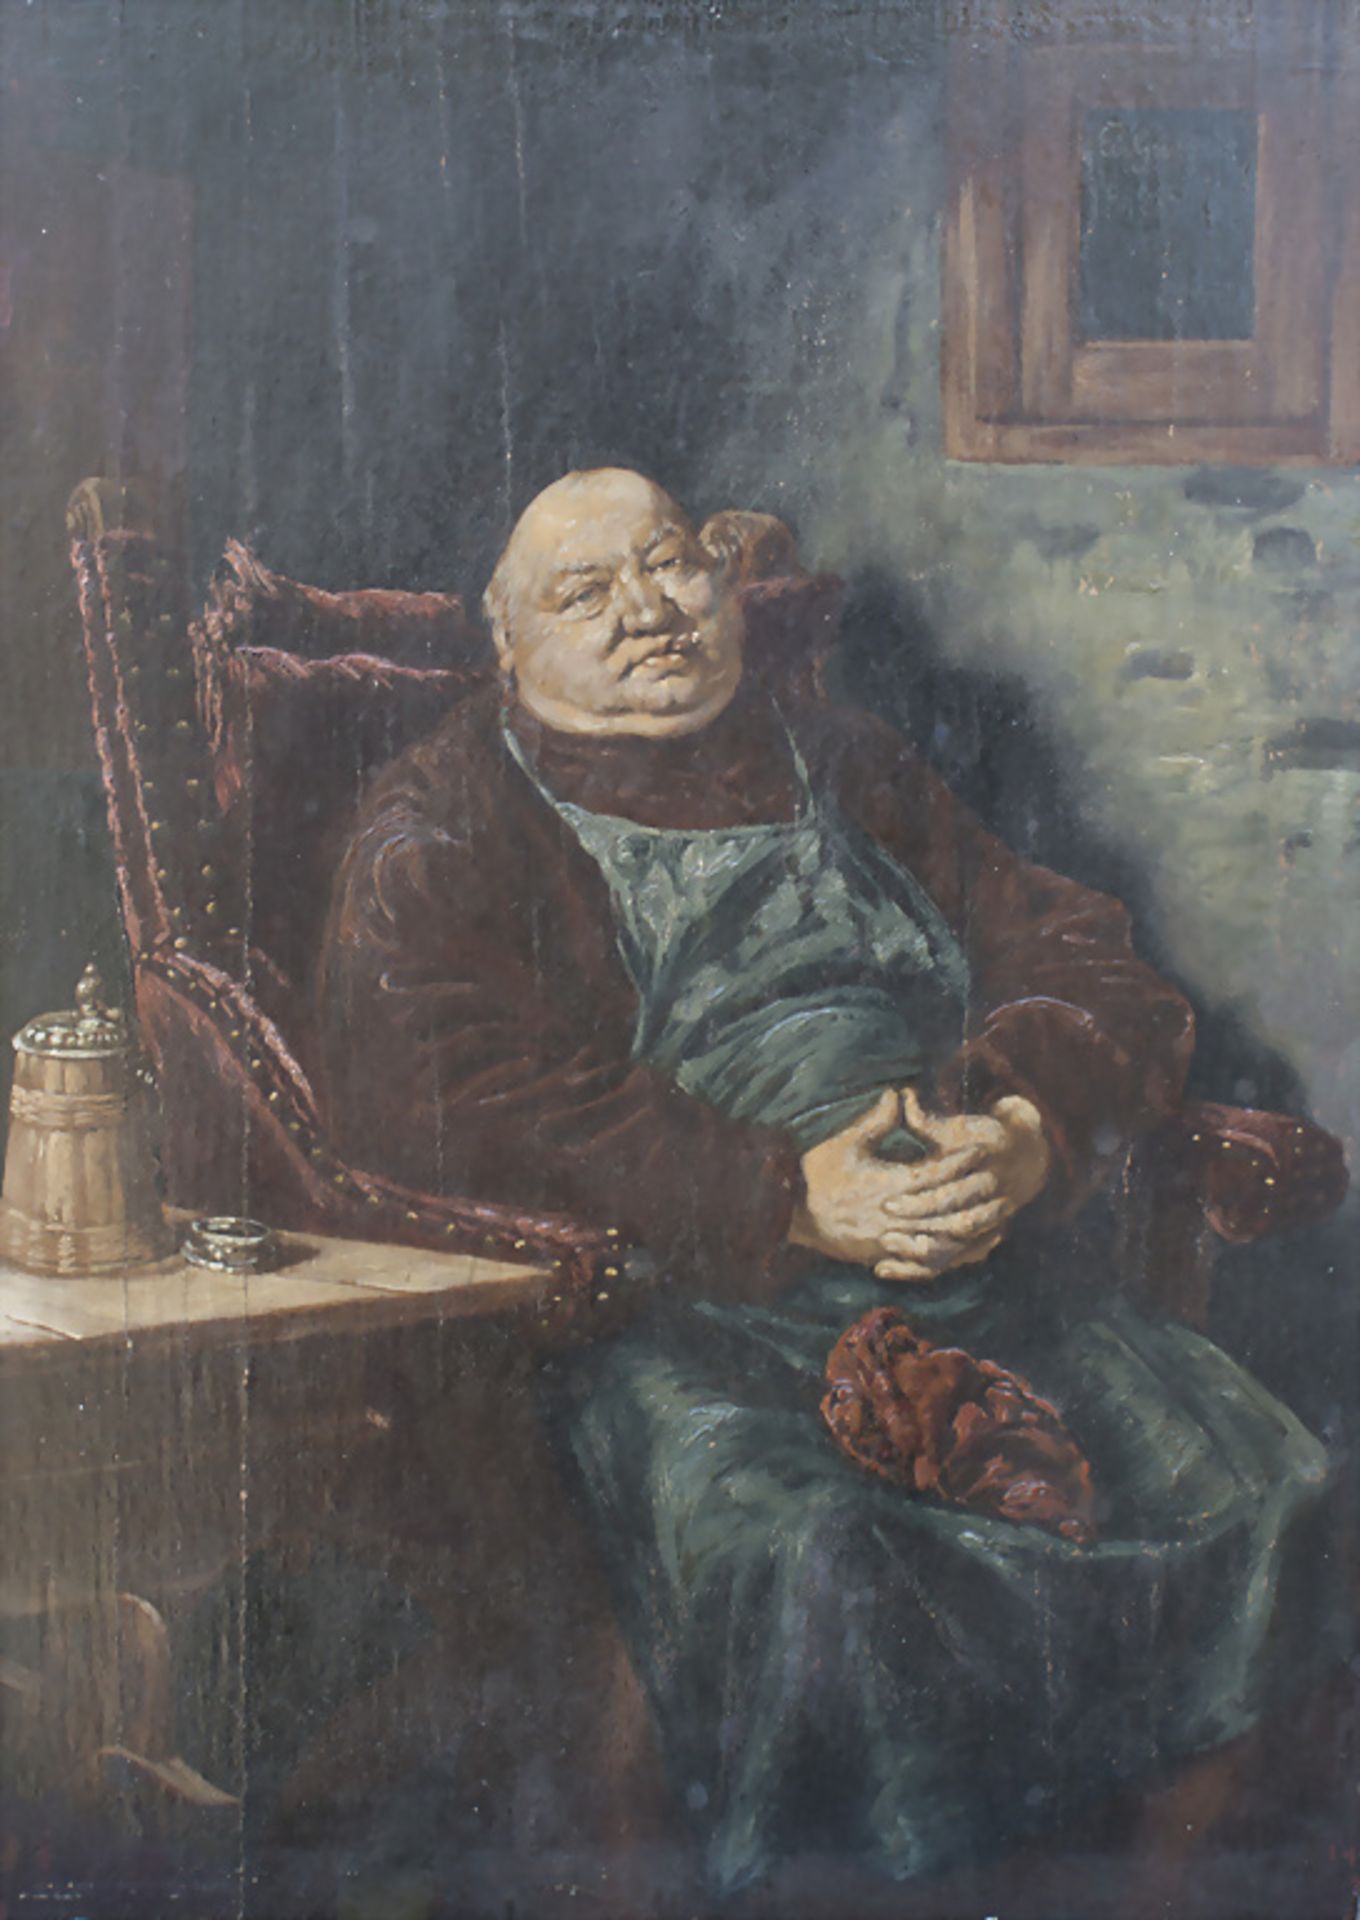 nach Eduard v. Grützner (1846-1925), 'Kellermeister' / after E. von Grützner, 'The cellar master'